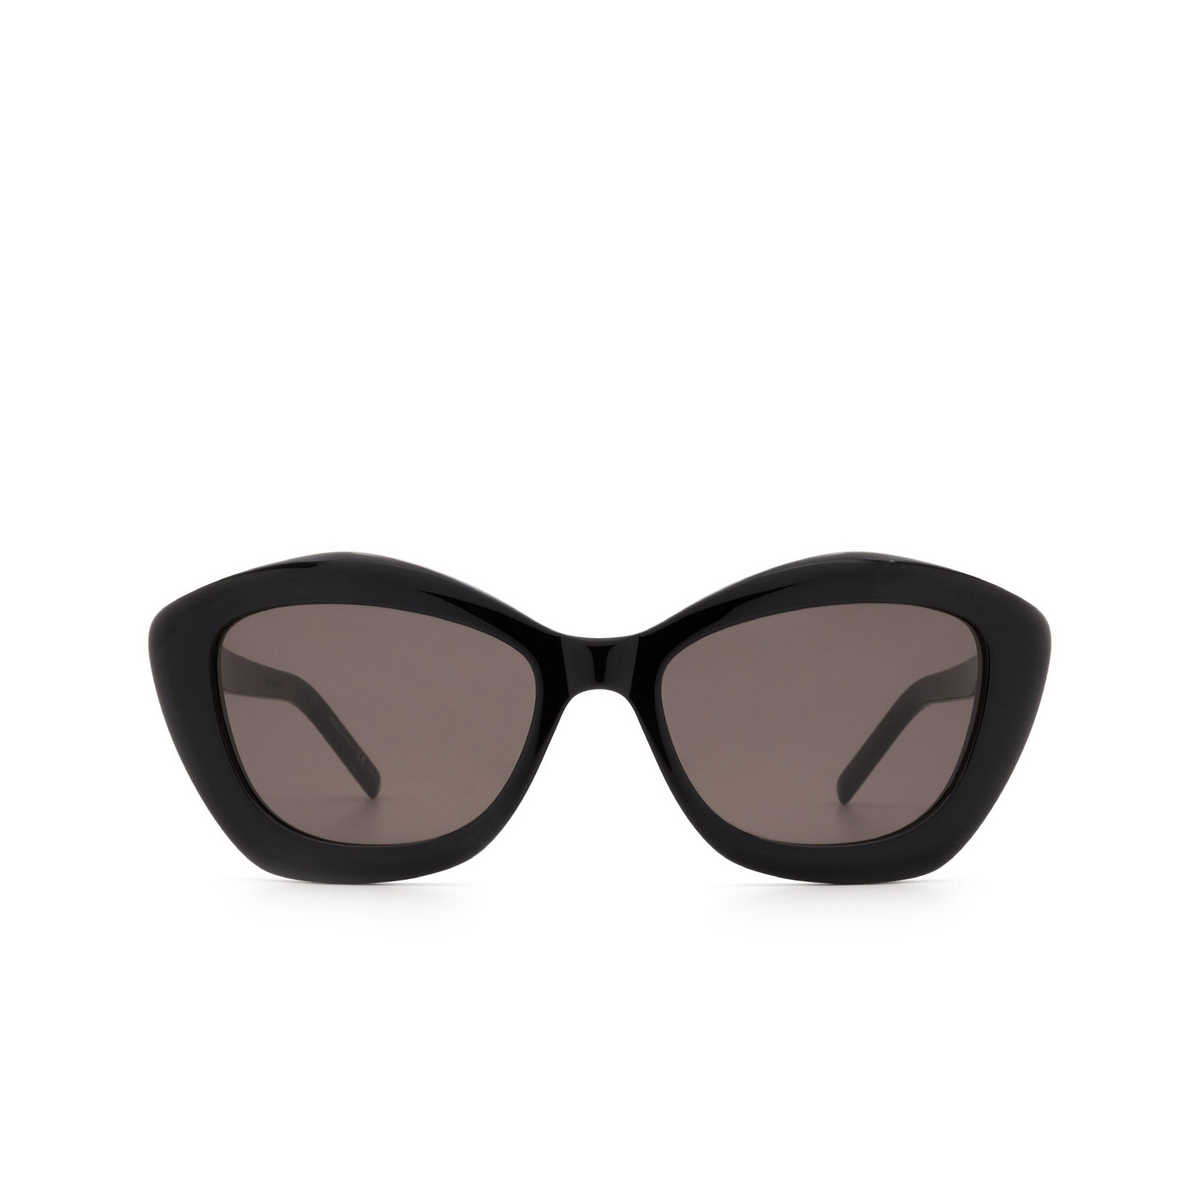 Saint Laurent SL 68 Sunglasses 001 Black - front view